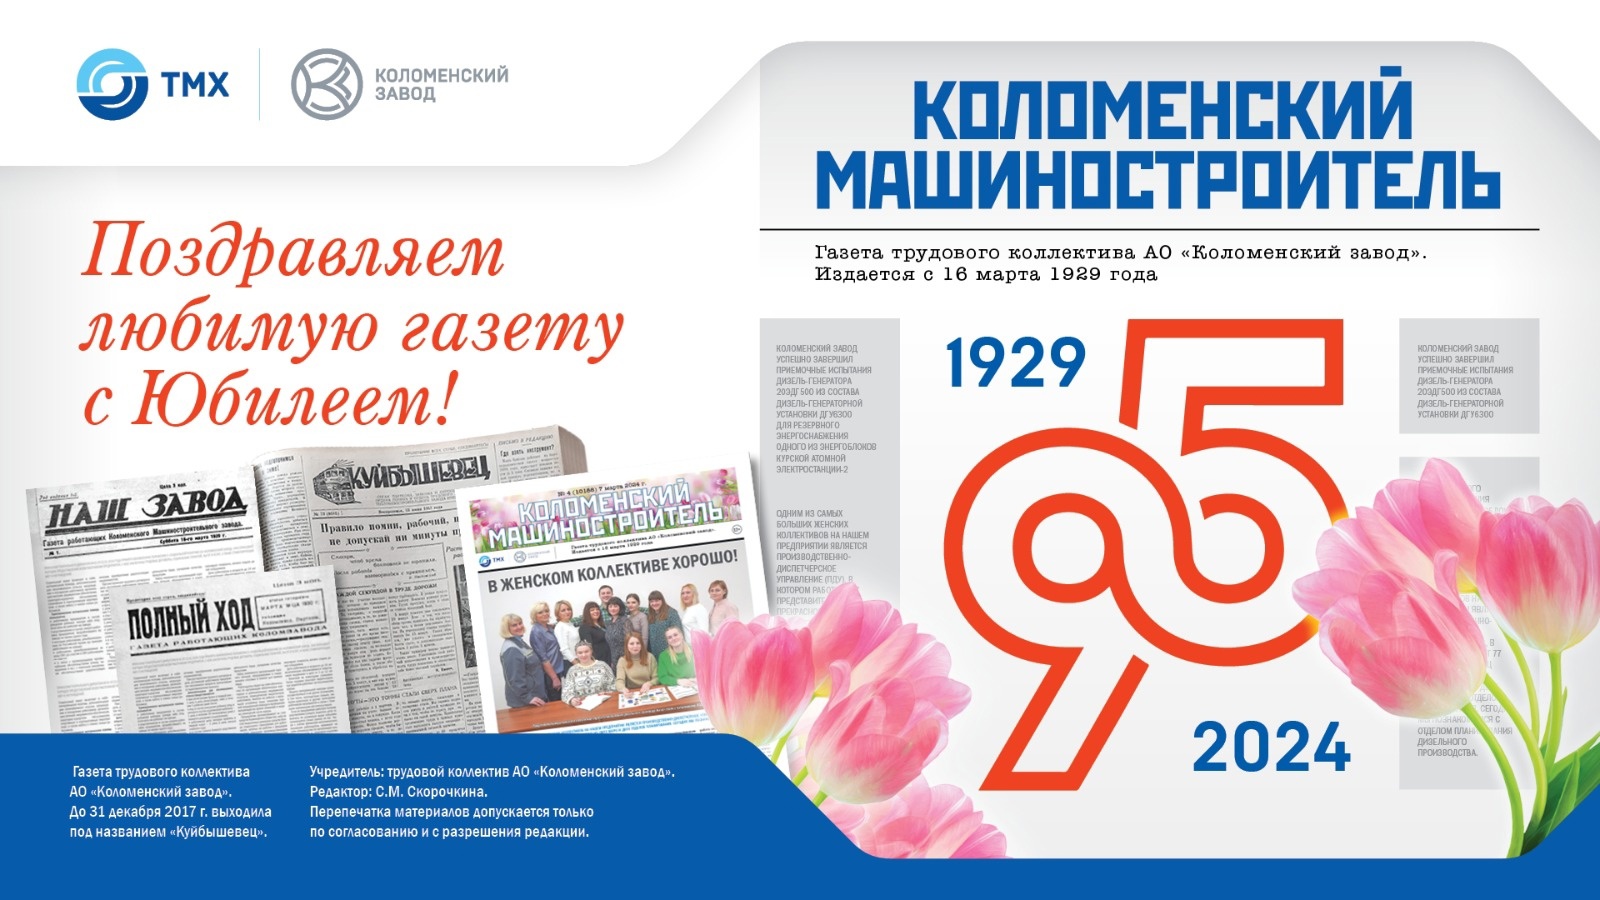 95 лет газете "Коломенский машиностроитель"